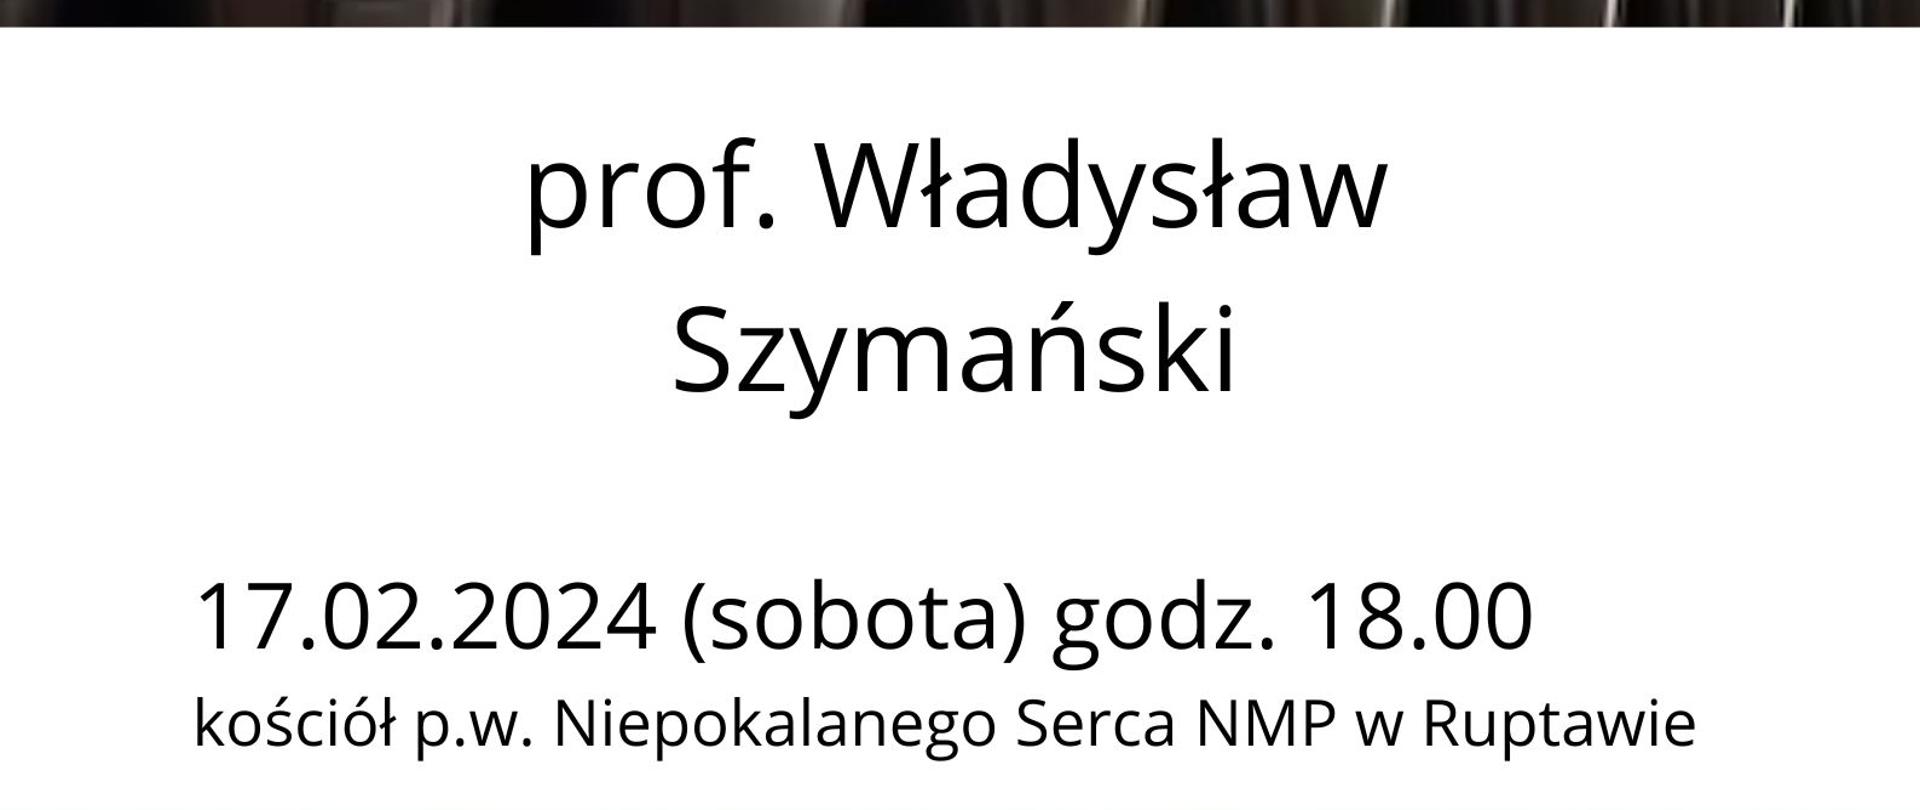 Plakat informacyjny dotyczący recitalu organowego odbywającego się w dniu 17.02.2024 r. o godz. 18.00.